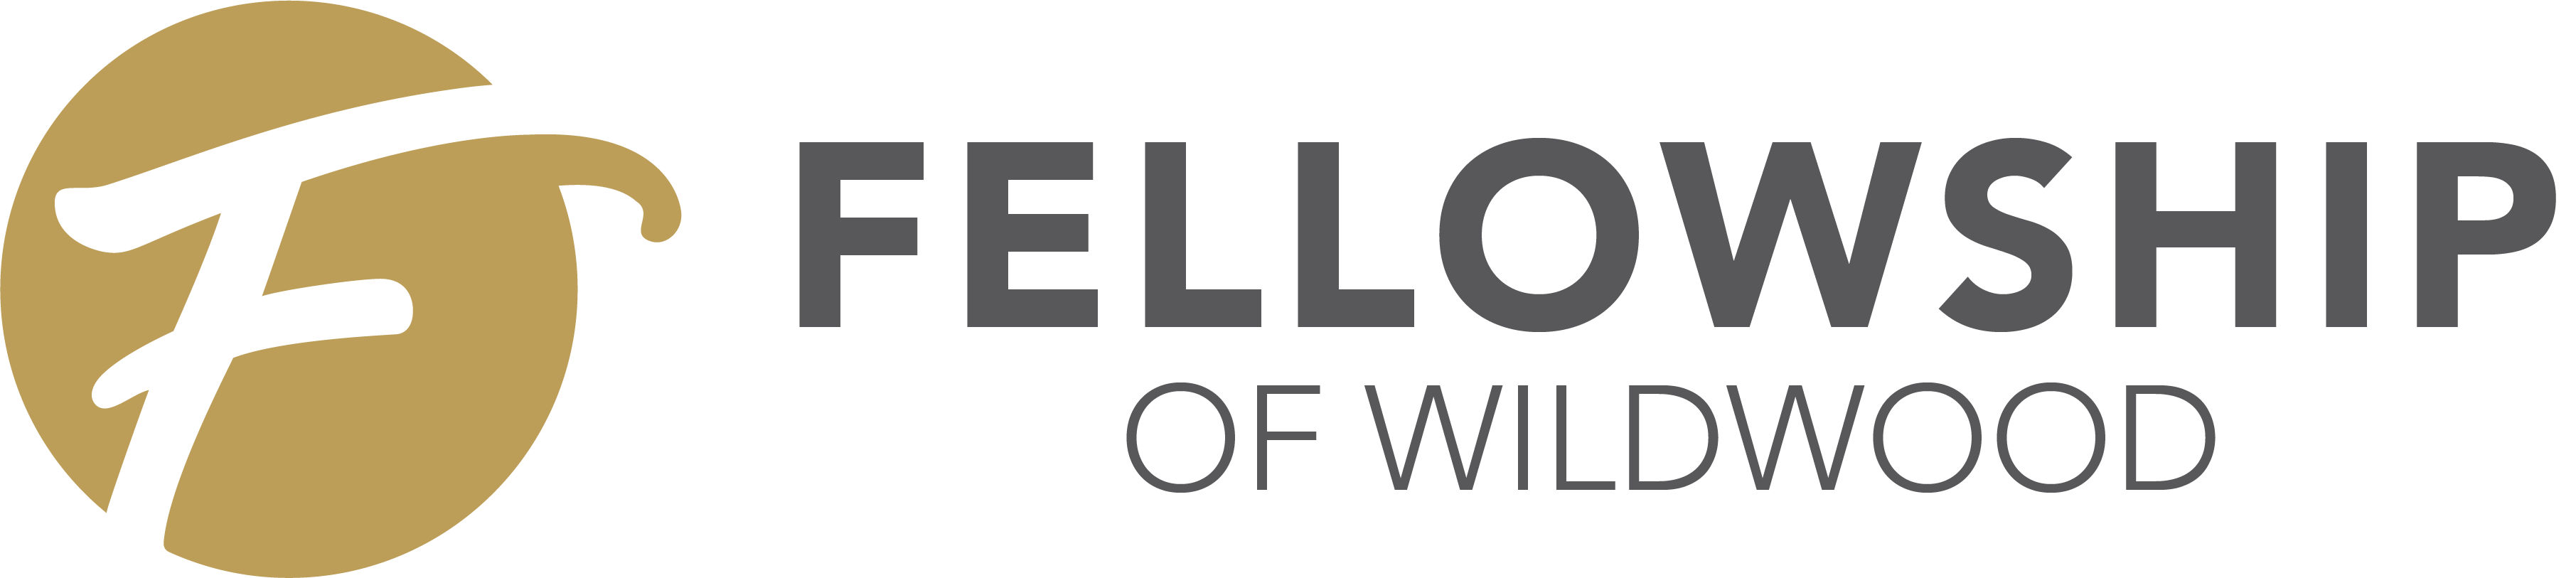 Fellowship of Wildwood